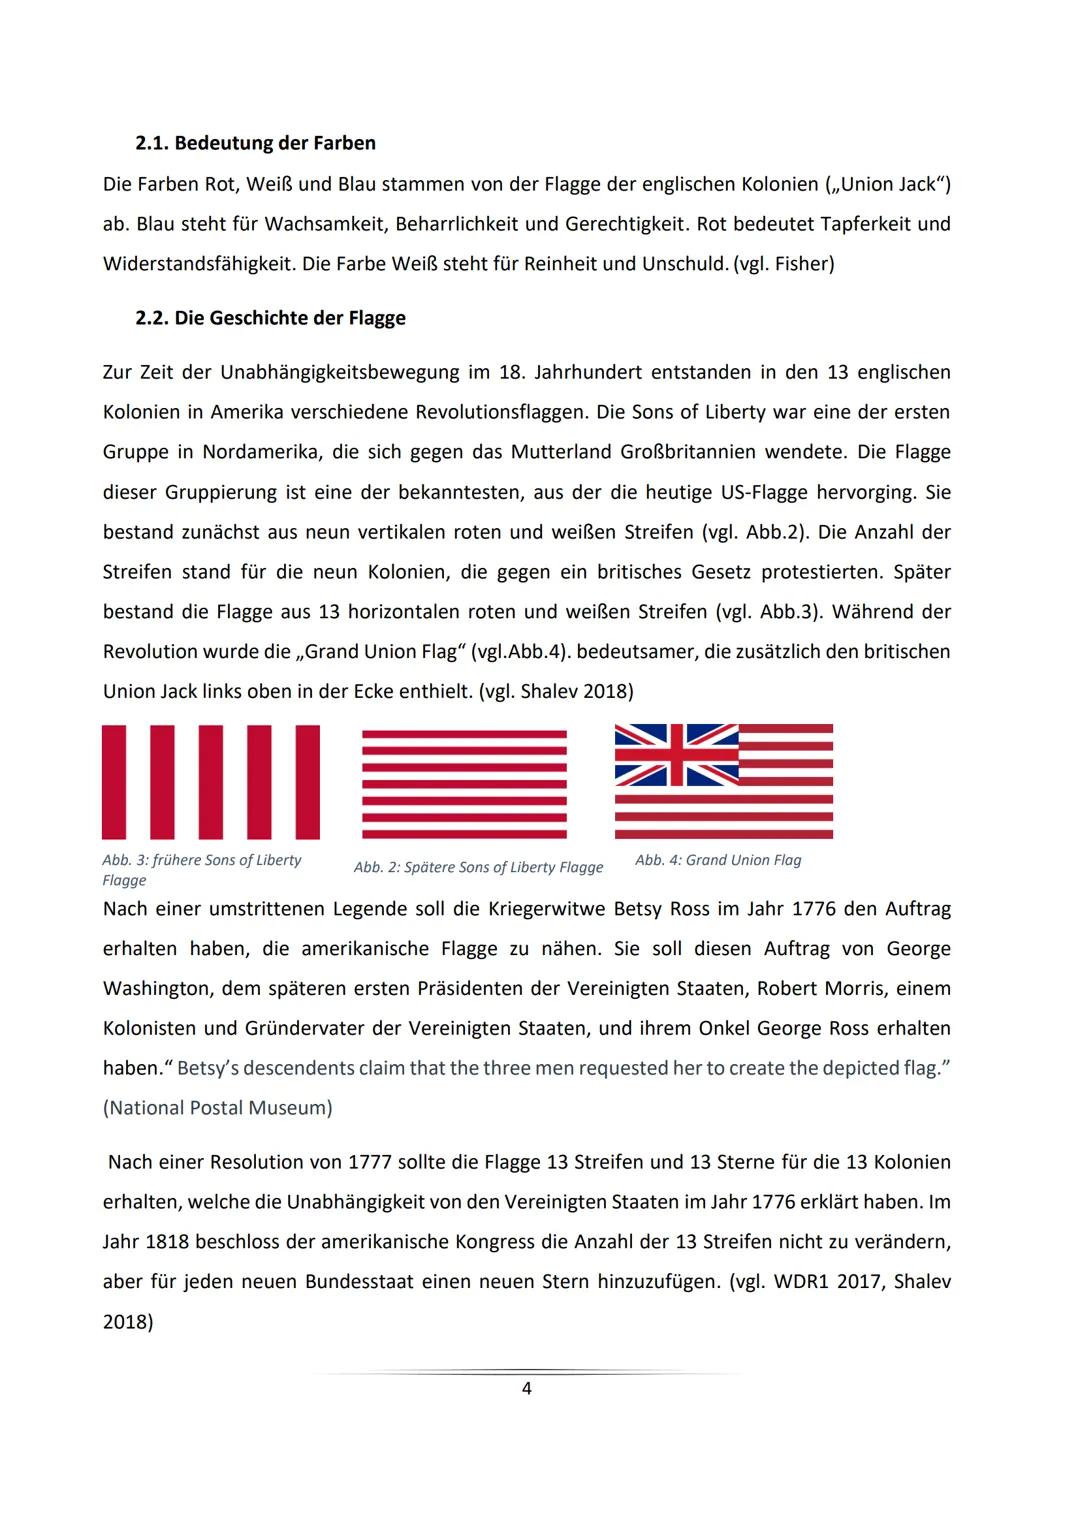 The Star-Spangled Banner
Die Berechnung des Farbverhältnisses der US-amerikanischen Flagge
unter besonderer Berücksichtigung des Pentagramms